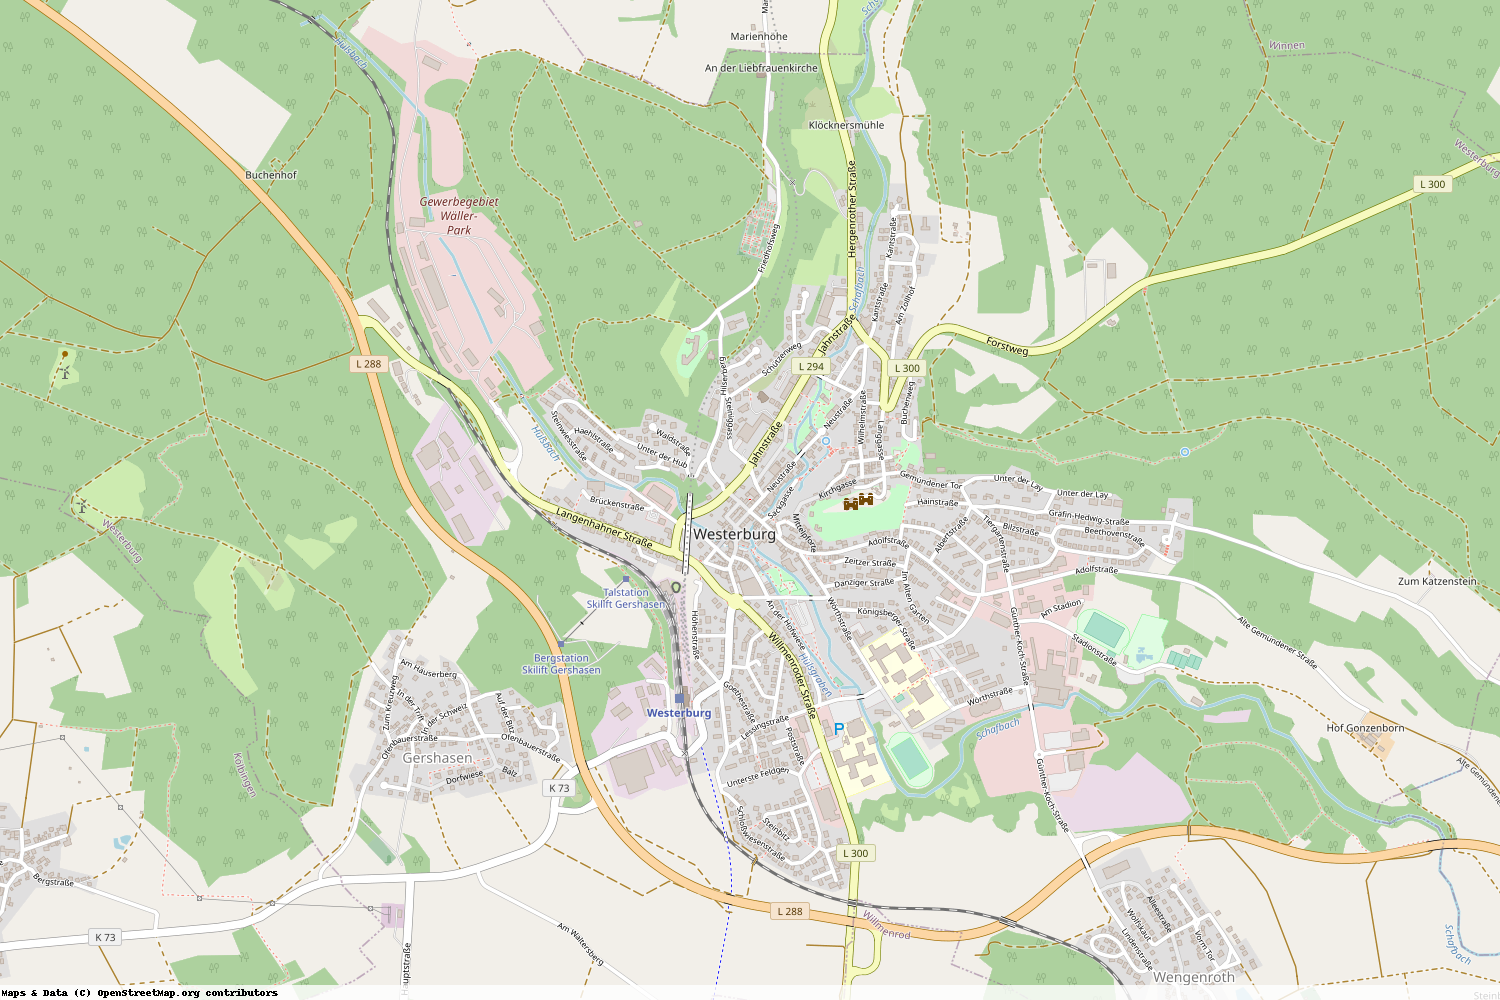 Ist gerade Stromausfall in Rheinland-Pfalz - Westerwaldkreis - Westerburg?